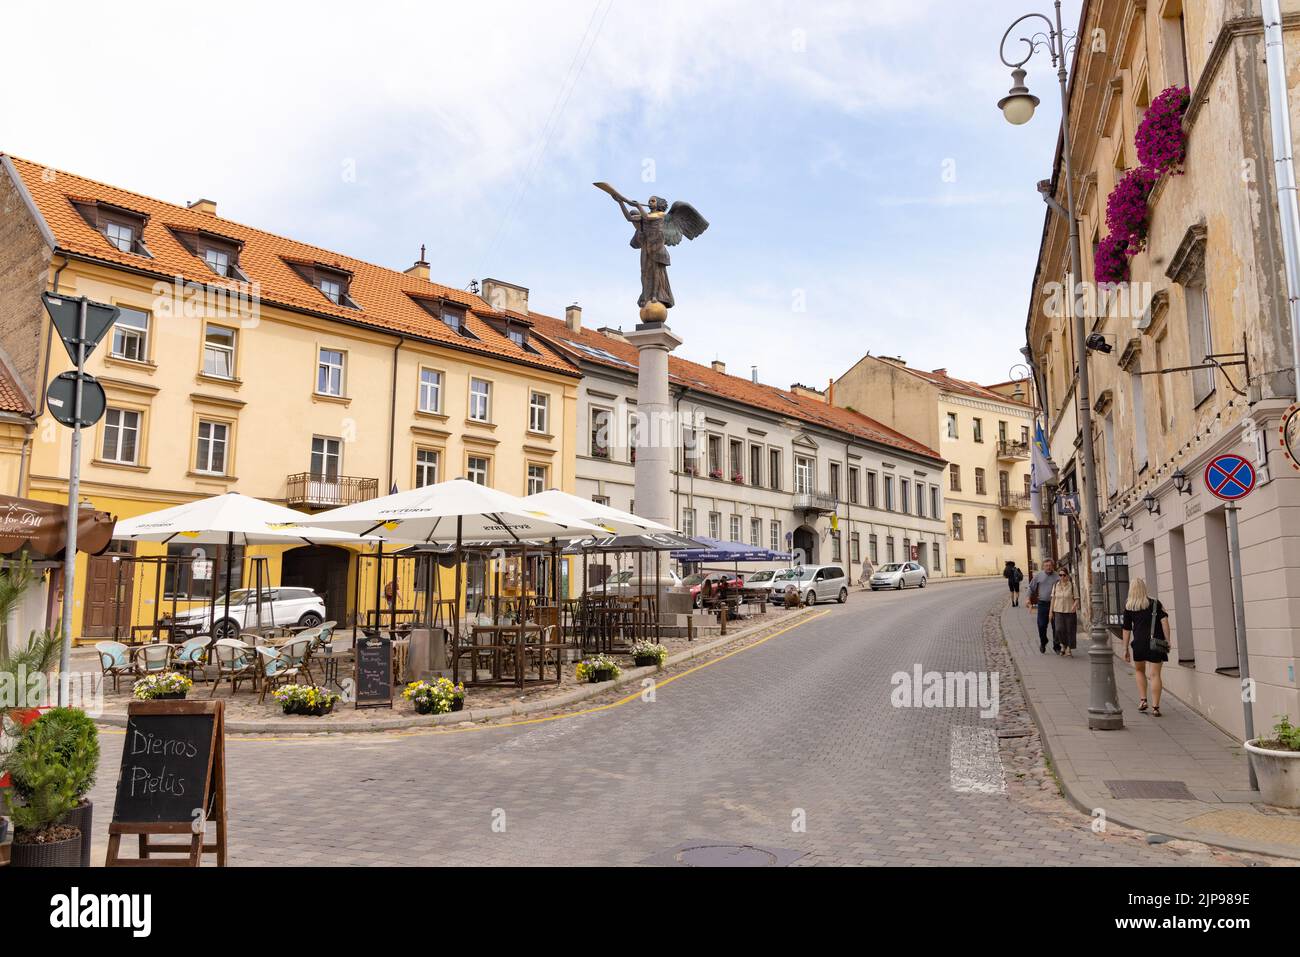 Estatua del Ángel de Uzupis de Romas Vilčiauskas en la Plaza del Ángel de Uzupis, es un símbolo de la república de Uzupis, ciudad vieja de Vilnius, Vilnius Lituania Foto de stock